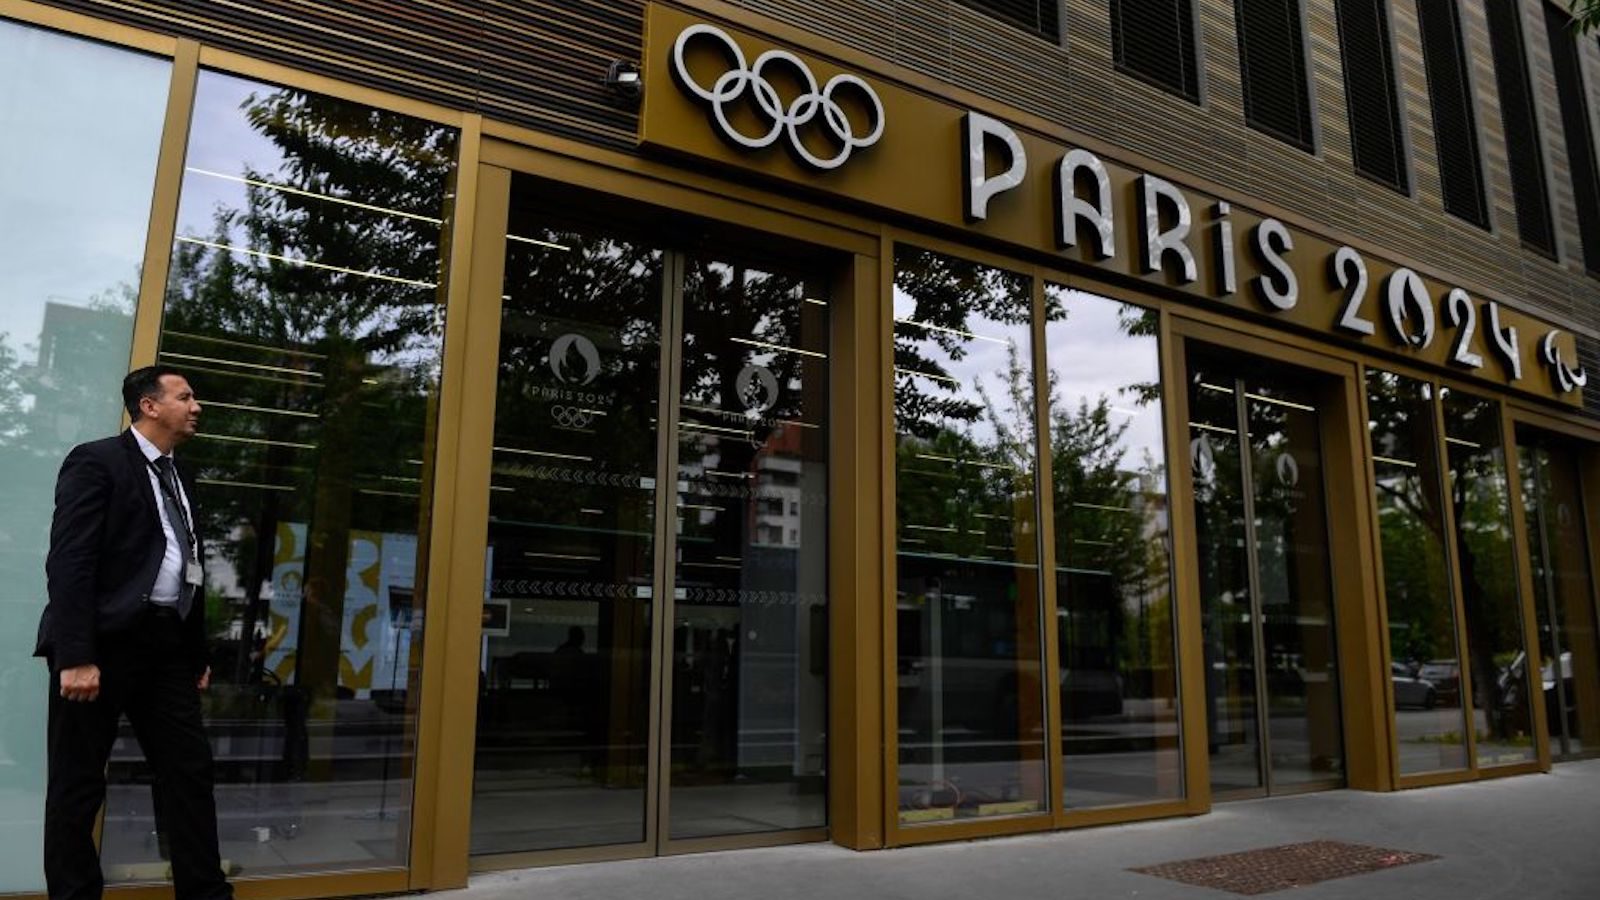 La police française perquisitionne les bureaux du comité d’organisation des Jeux olympiques de Paris 2024, selon un porte-parole